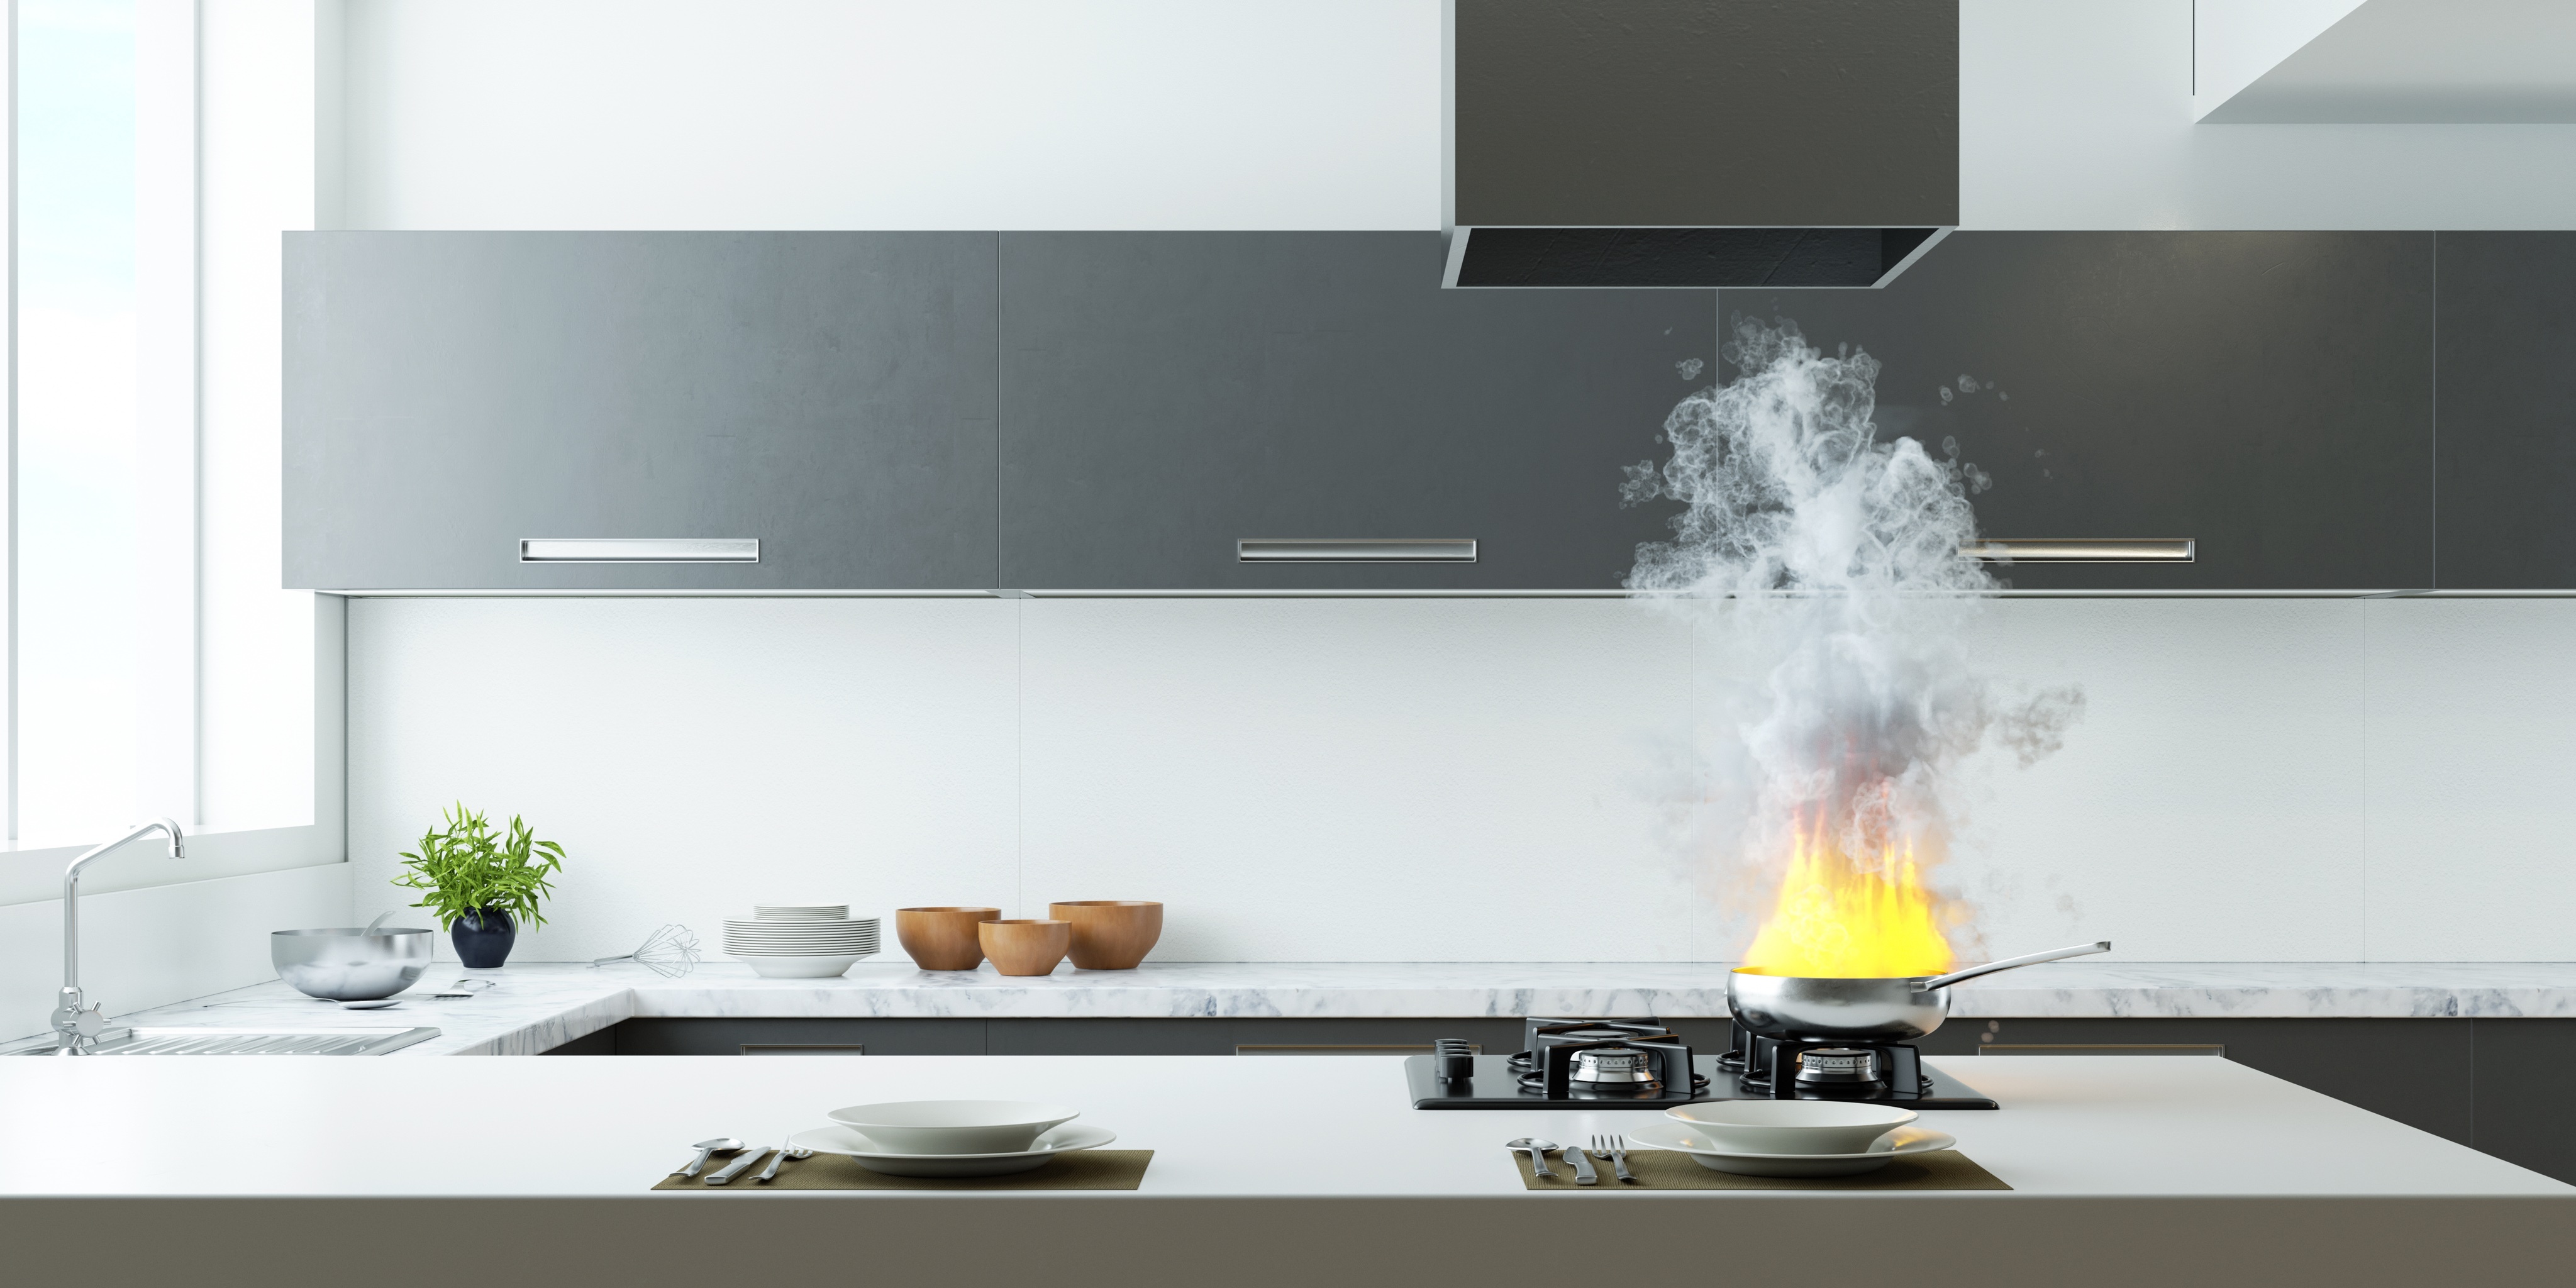 Фото: кухонная вытяжка и дым